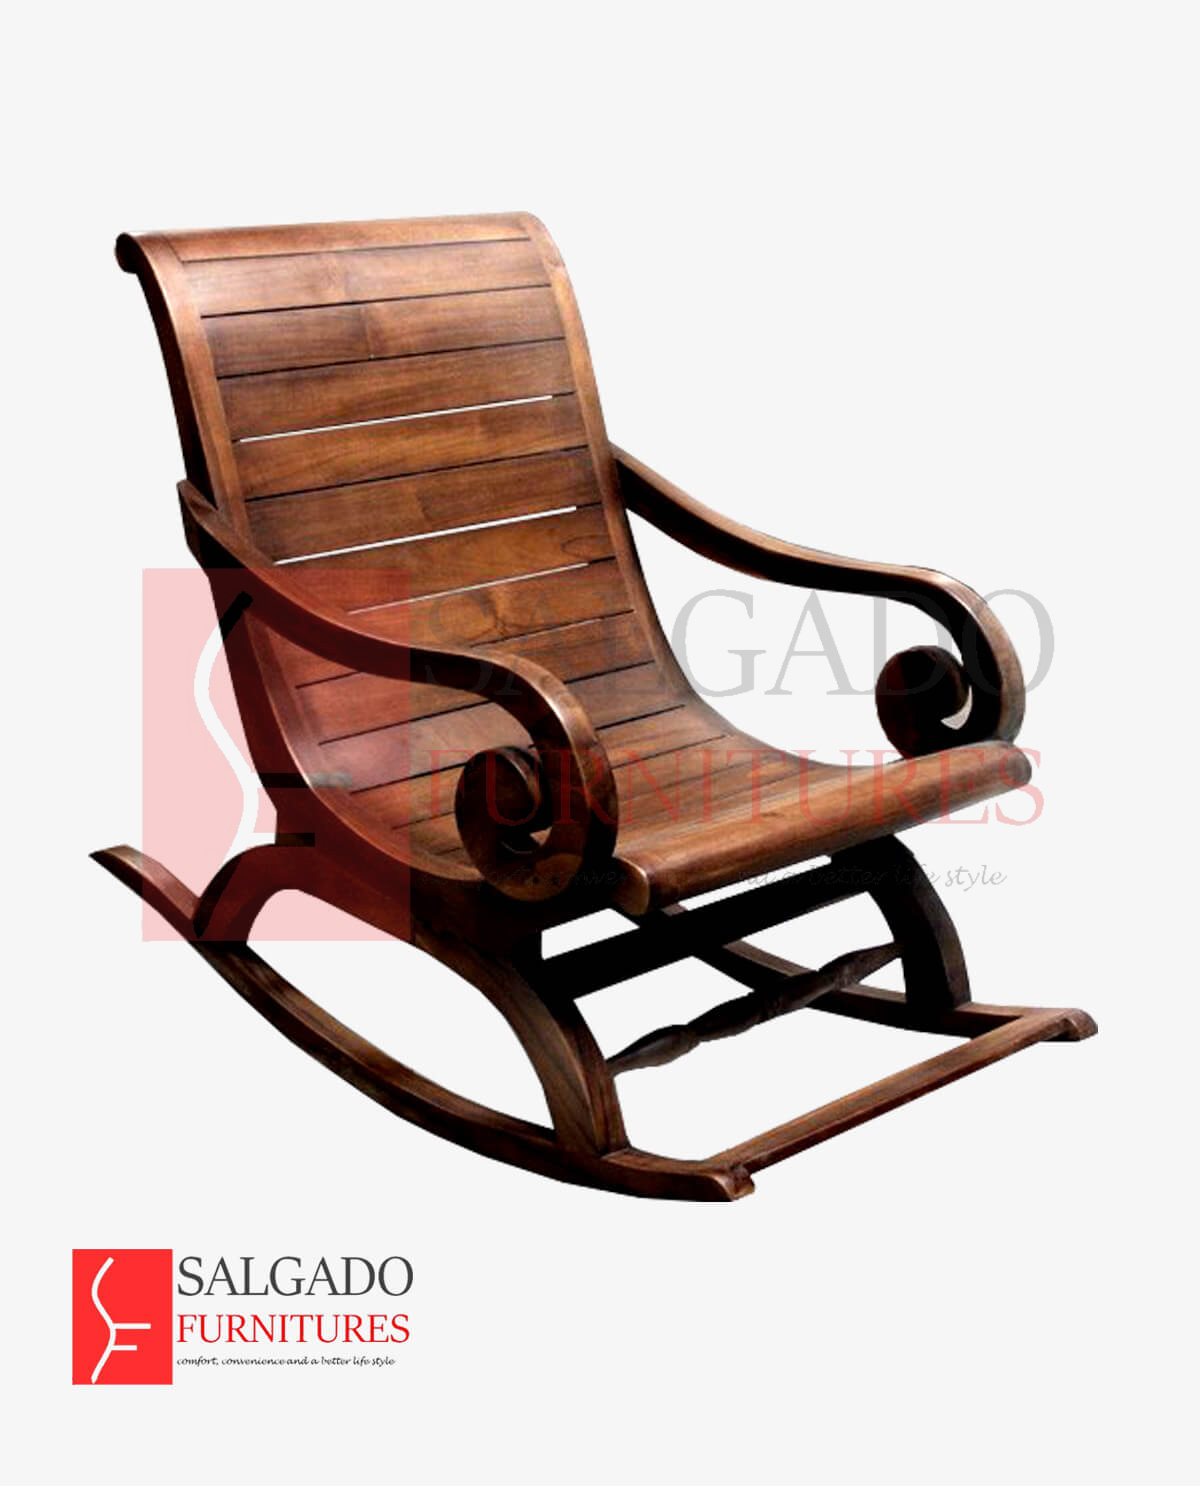 Buy Rocking Chairs Srilanka Salgado Furnitures Online Buy Furniture